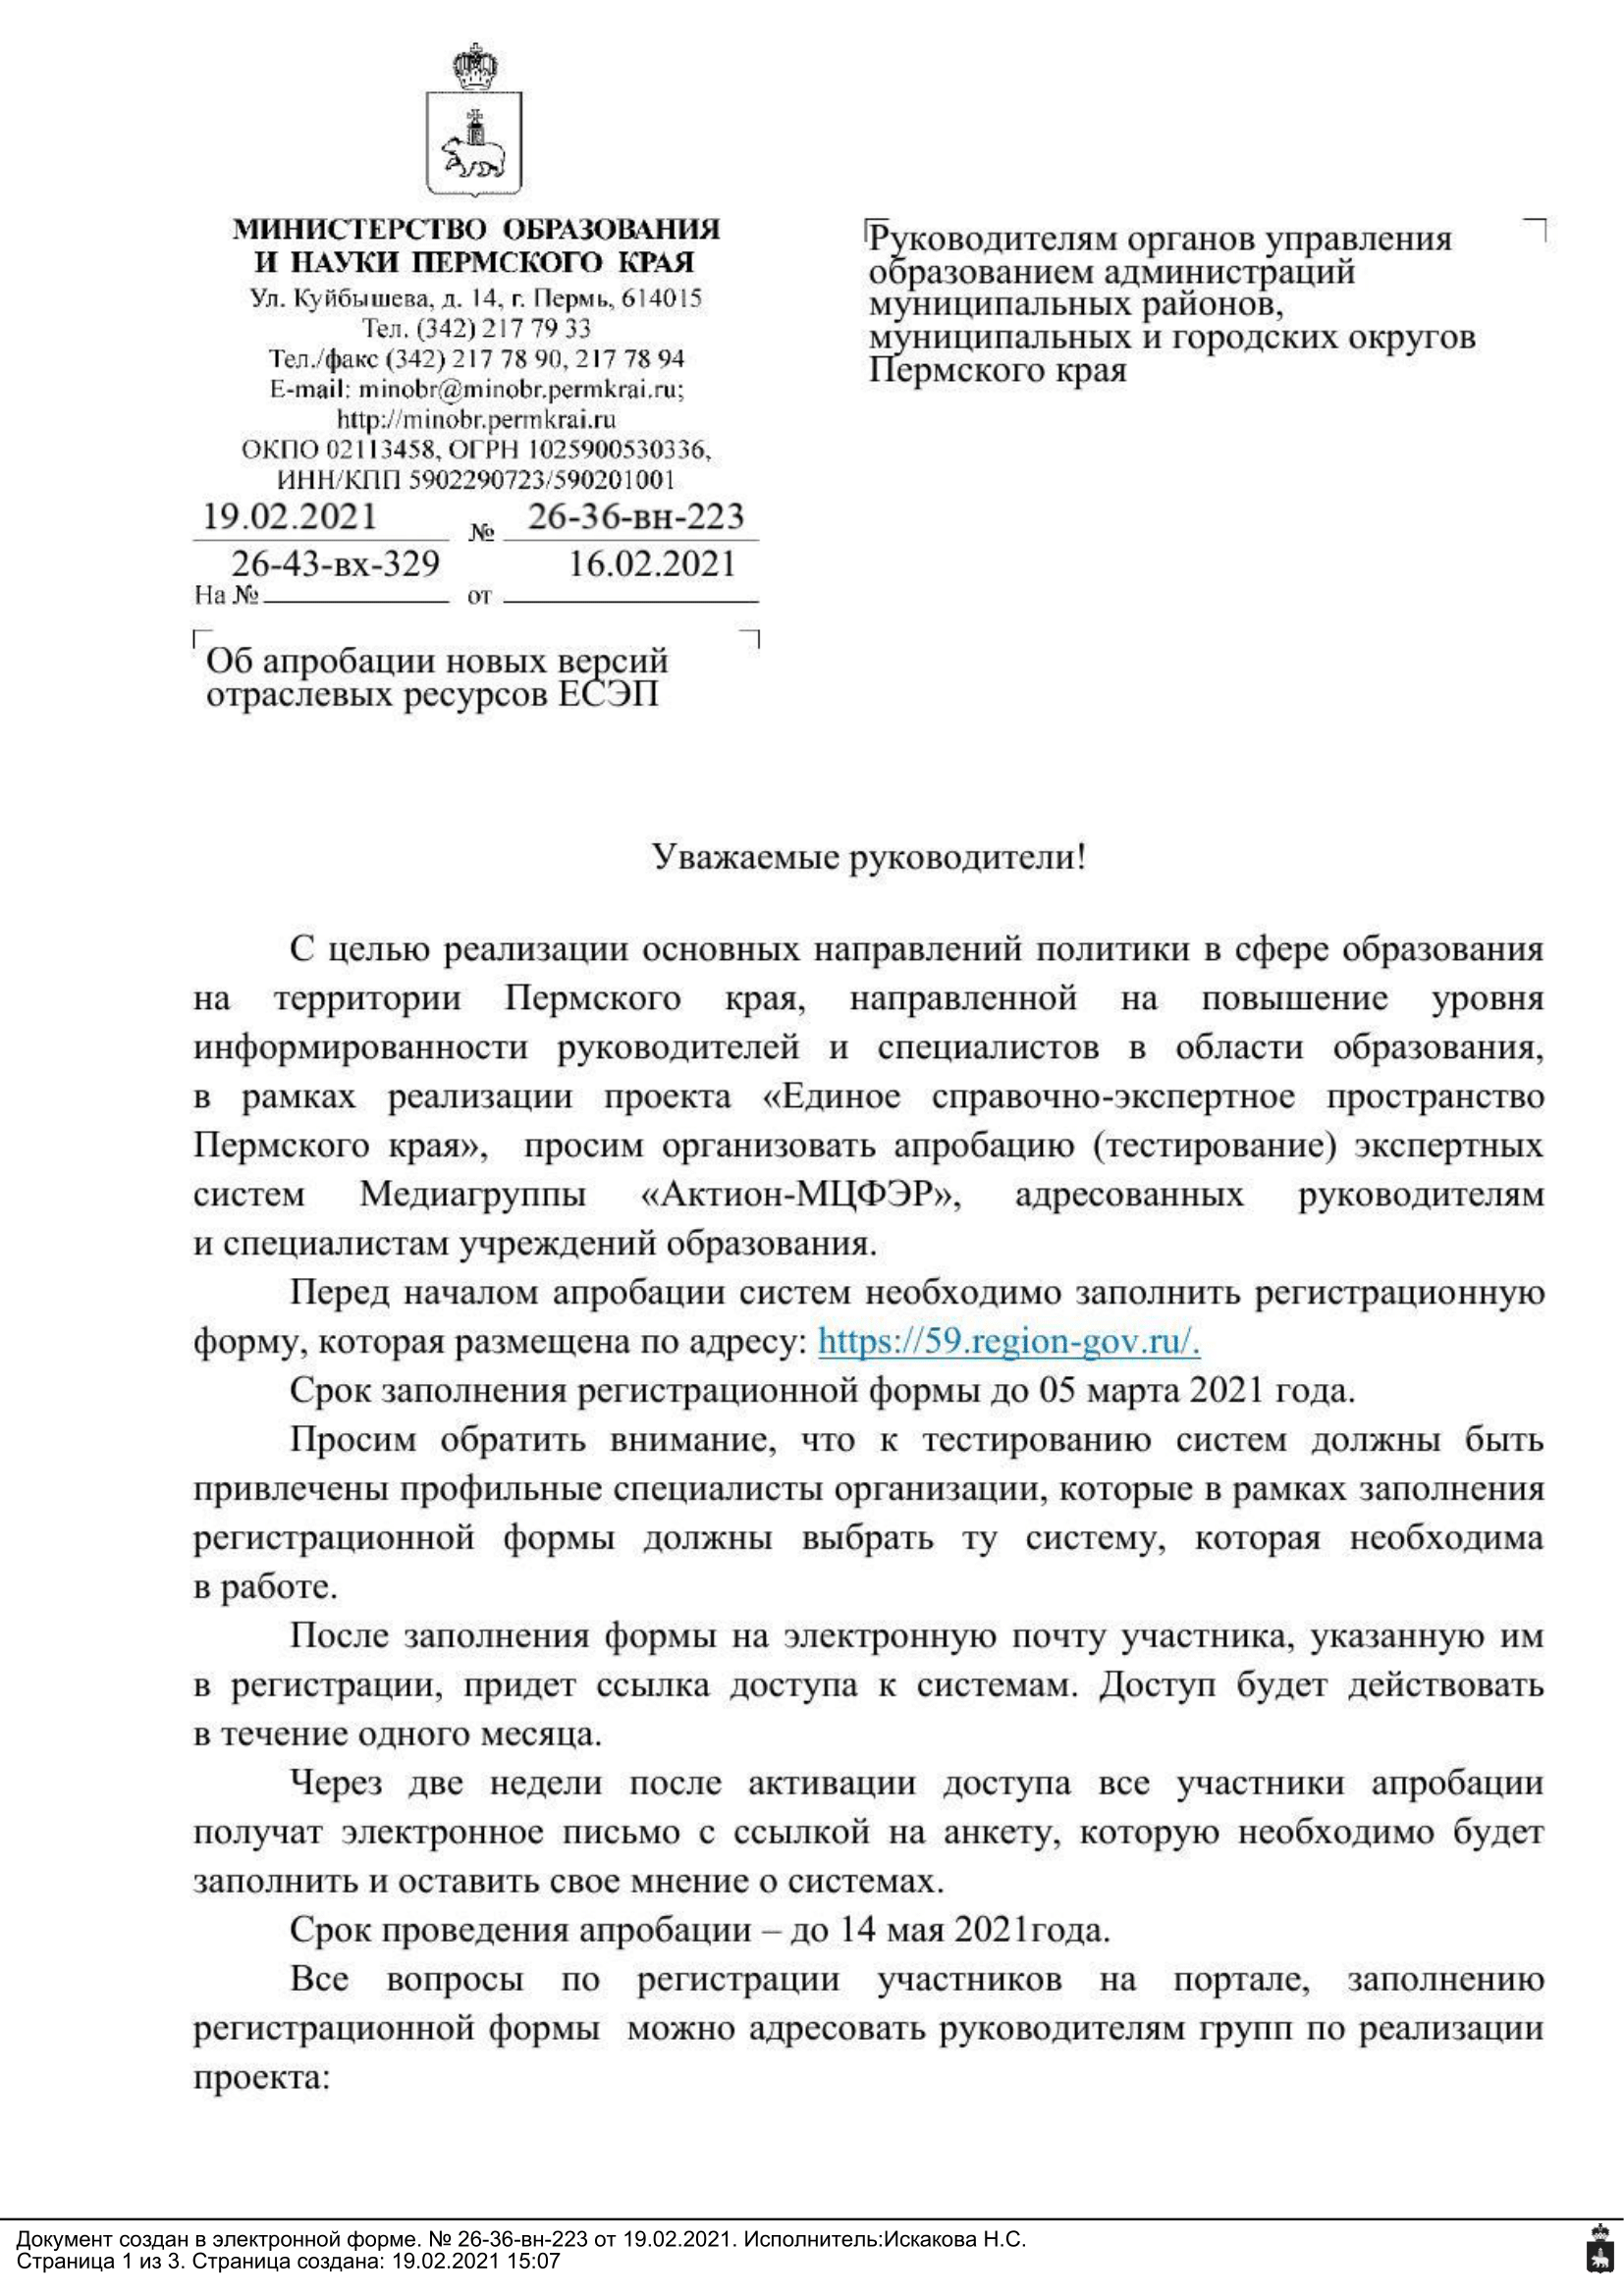 Письмо Министерства образования и науки Пермского края №26-36-вн-223 от 19.02.2021 г.